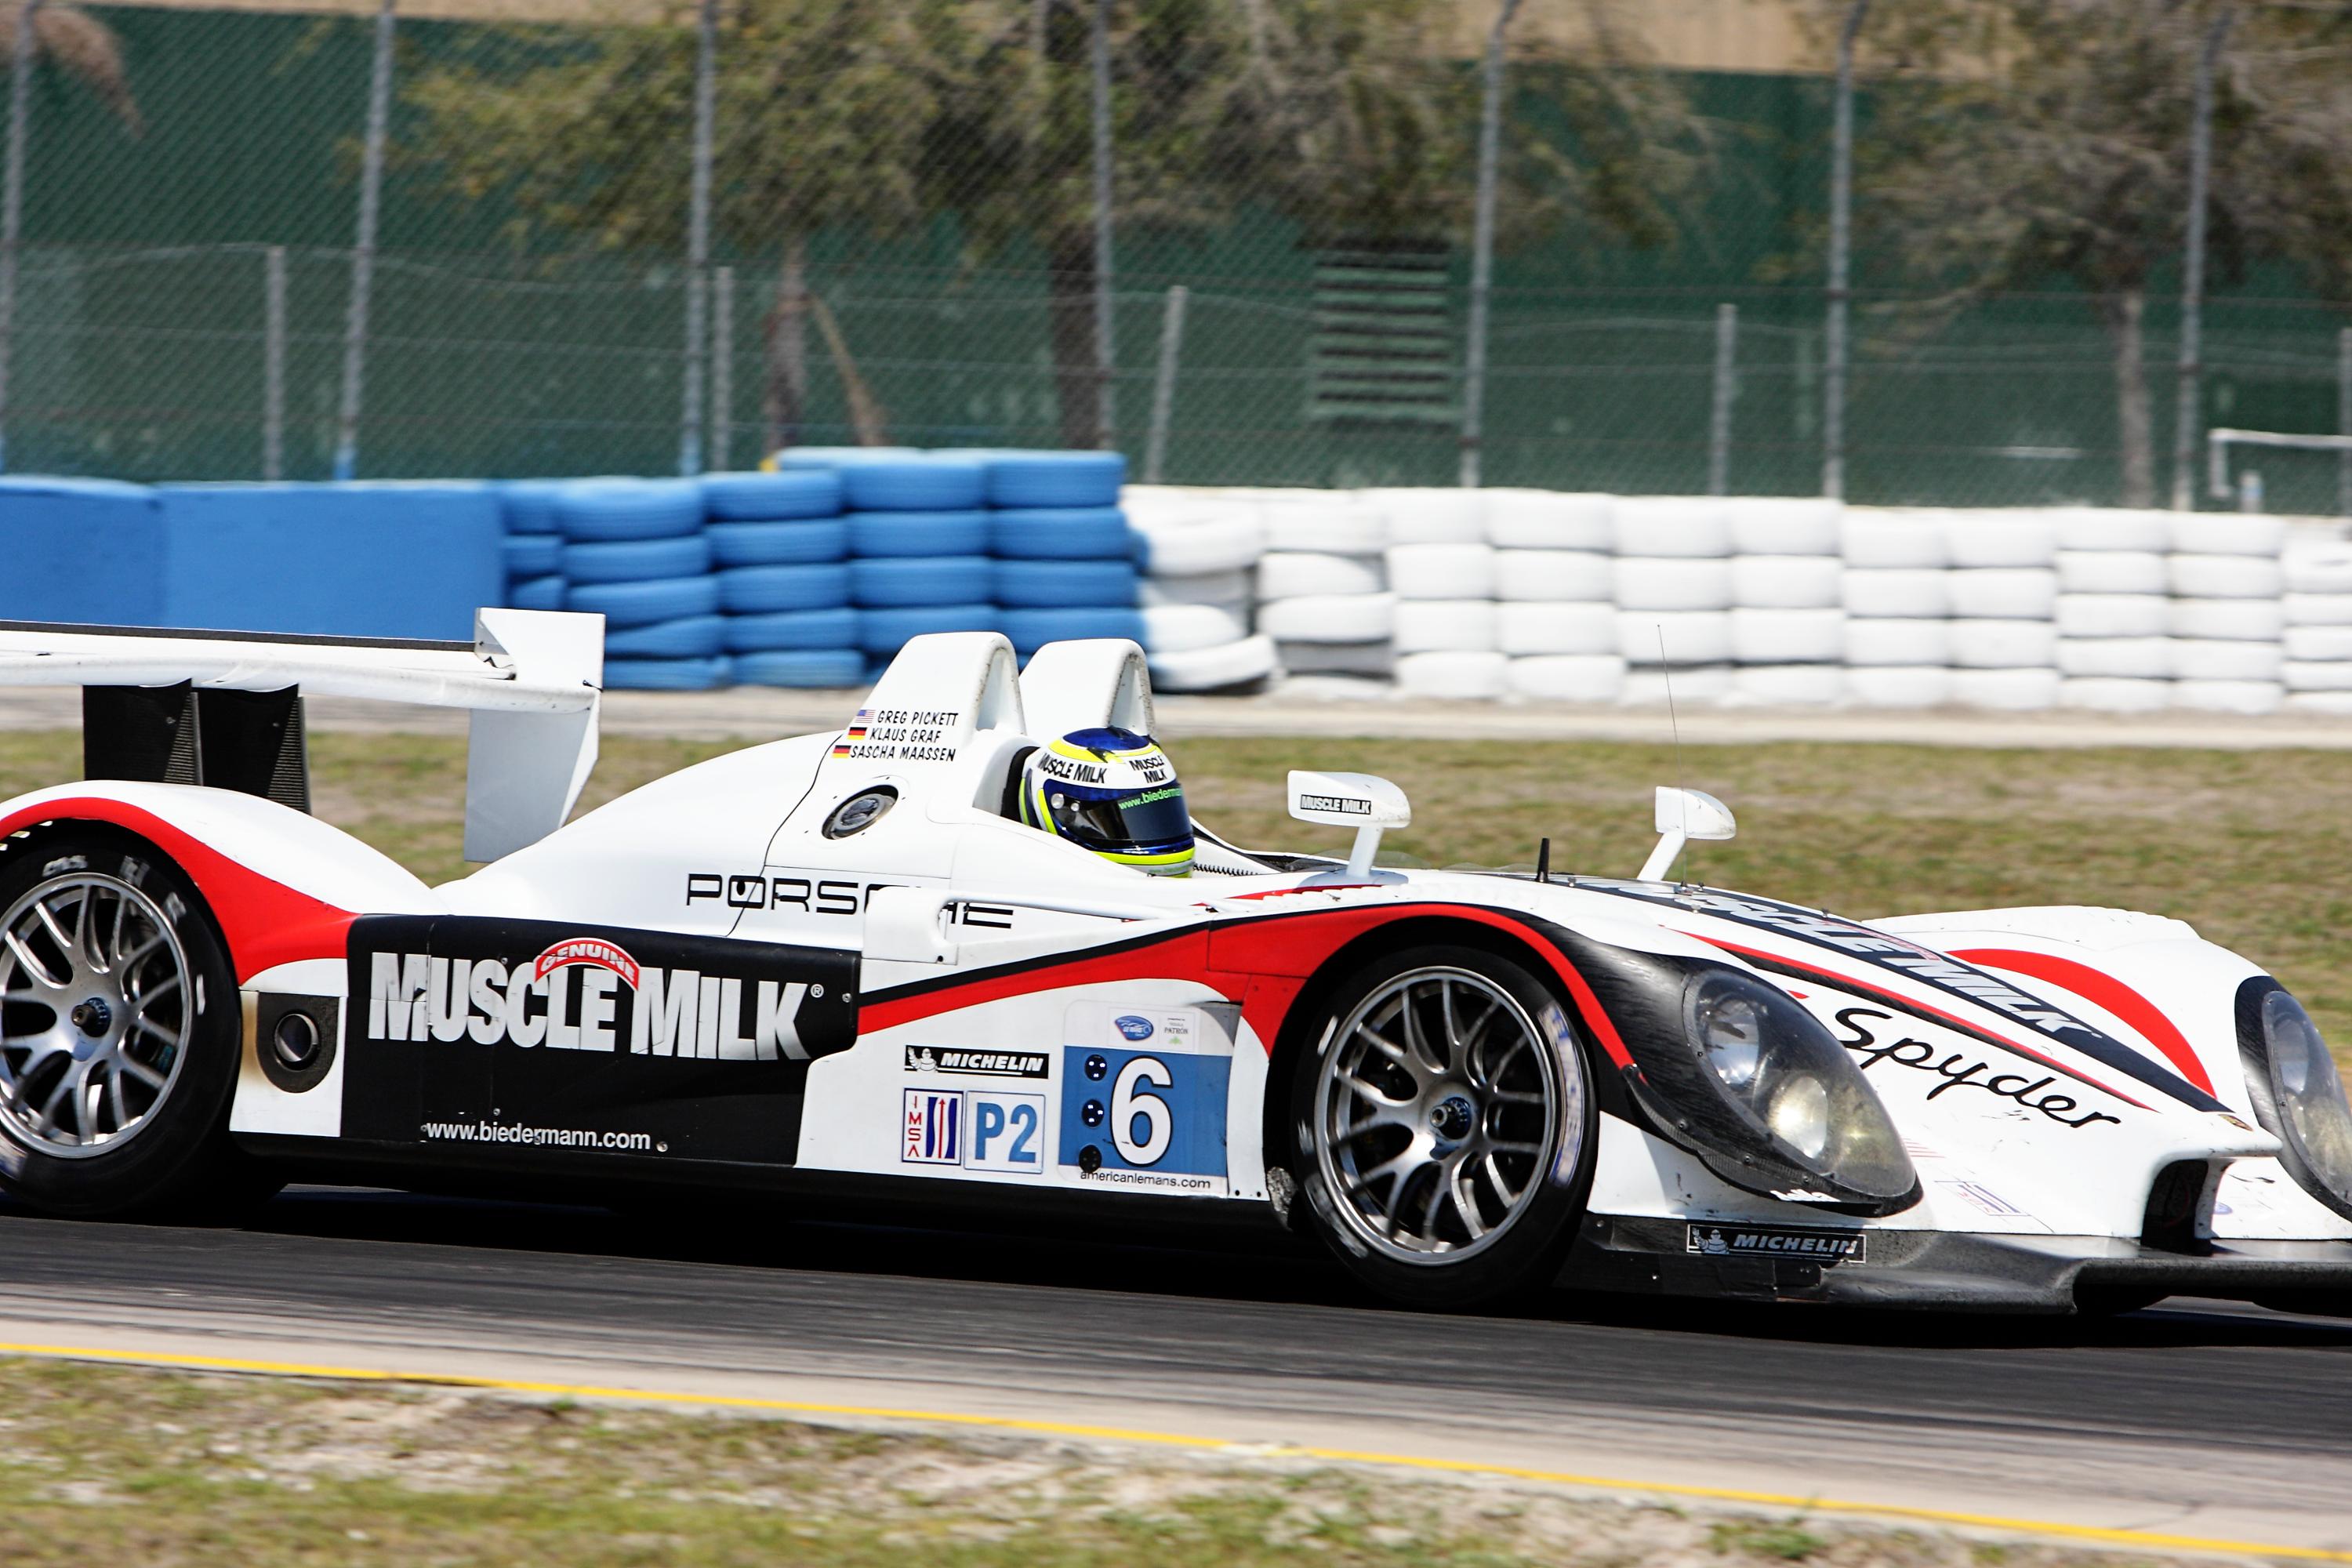 Porsche RS Spyder Evo Muscle Milk Team Cytosport